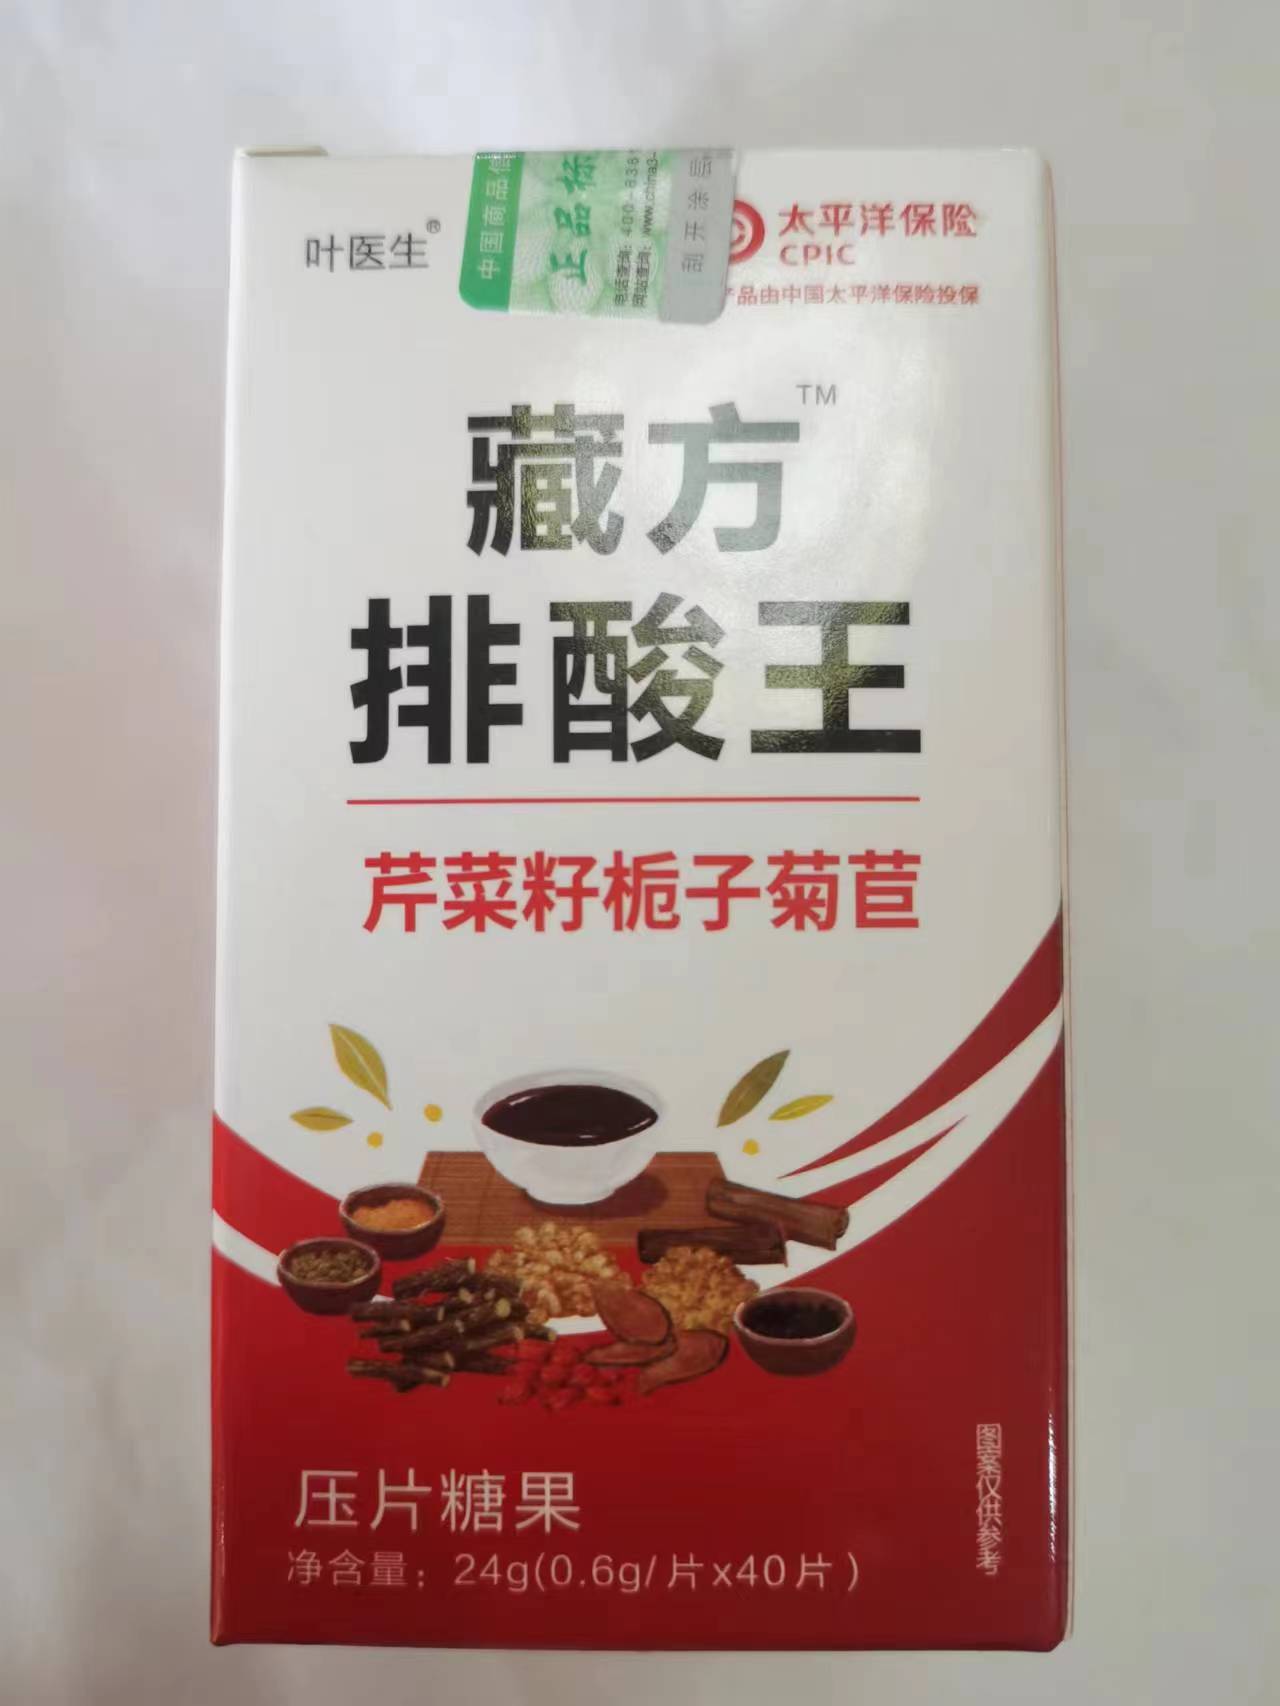 限量促销买1发2盒叶医生藏方排酸王芹菜籽栀子菊苣